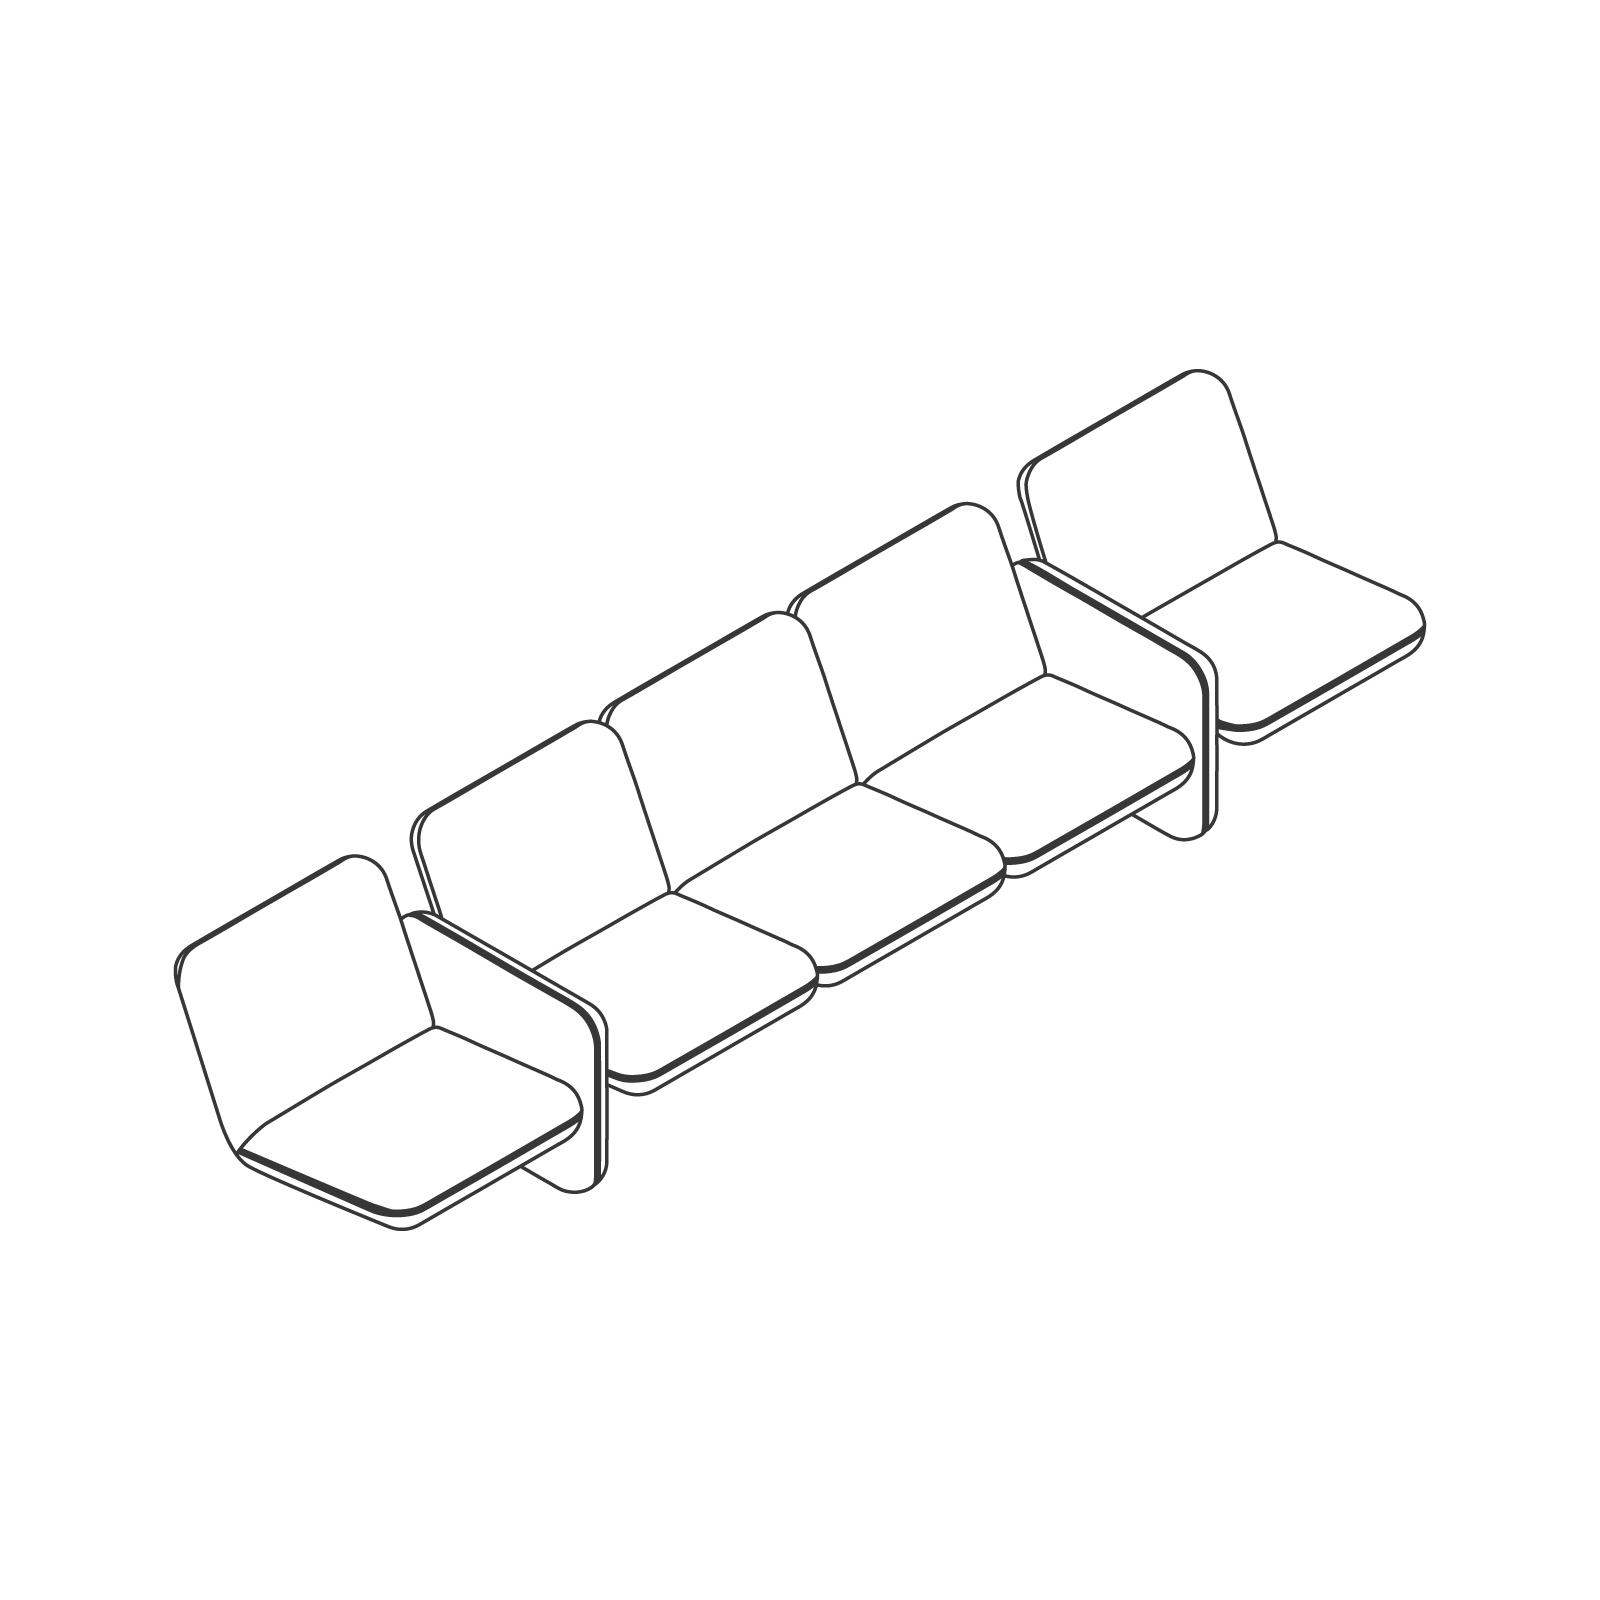 Dibujo en líneas - Conjunto de sofás modulares Wilkes – 5 asientos